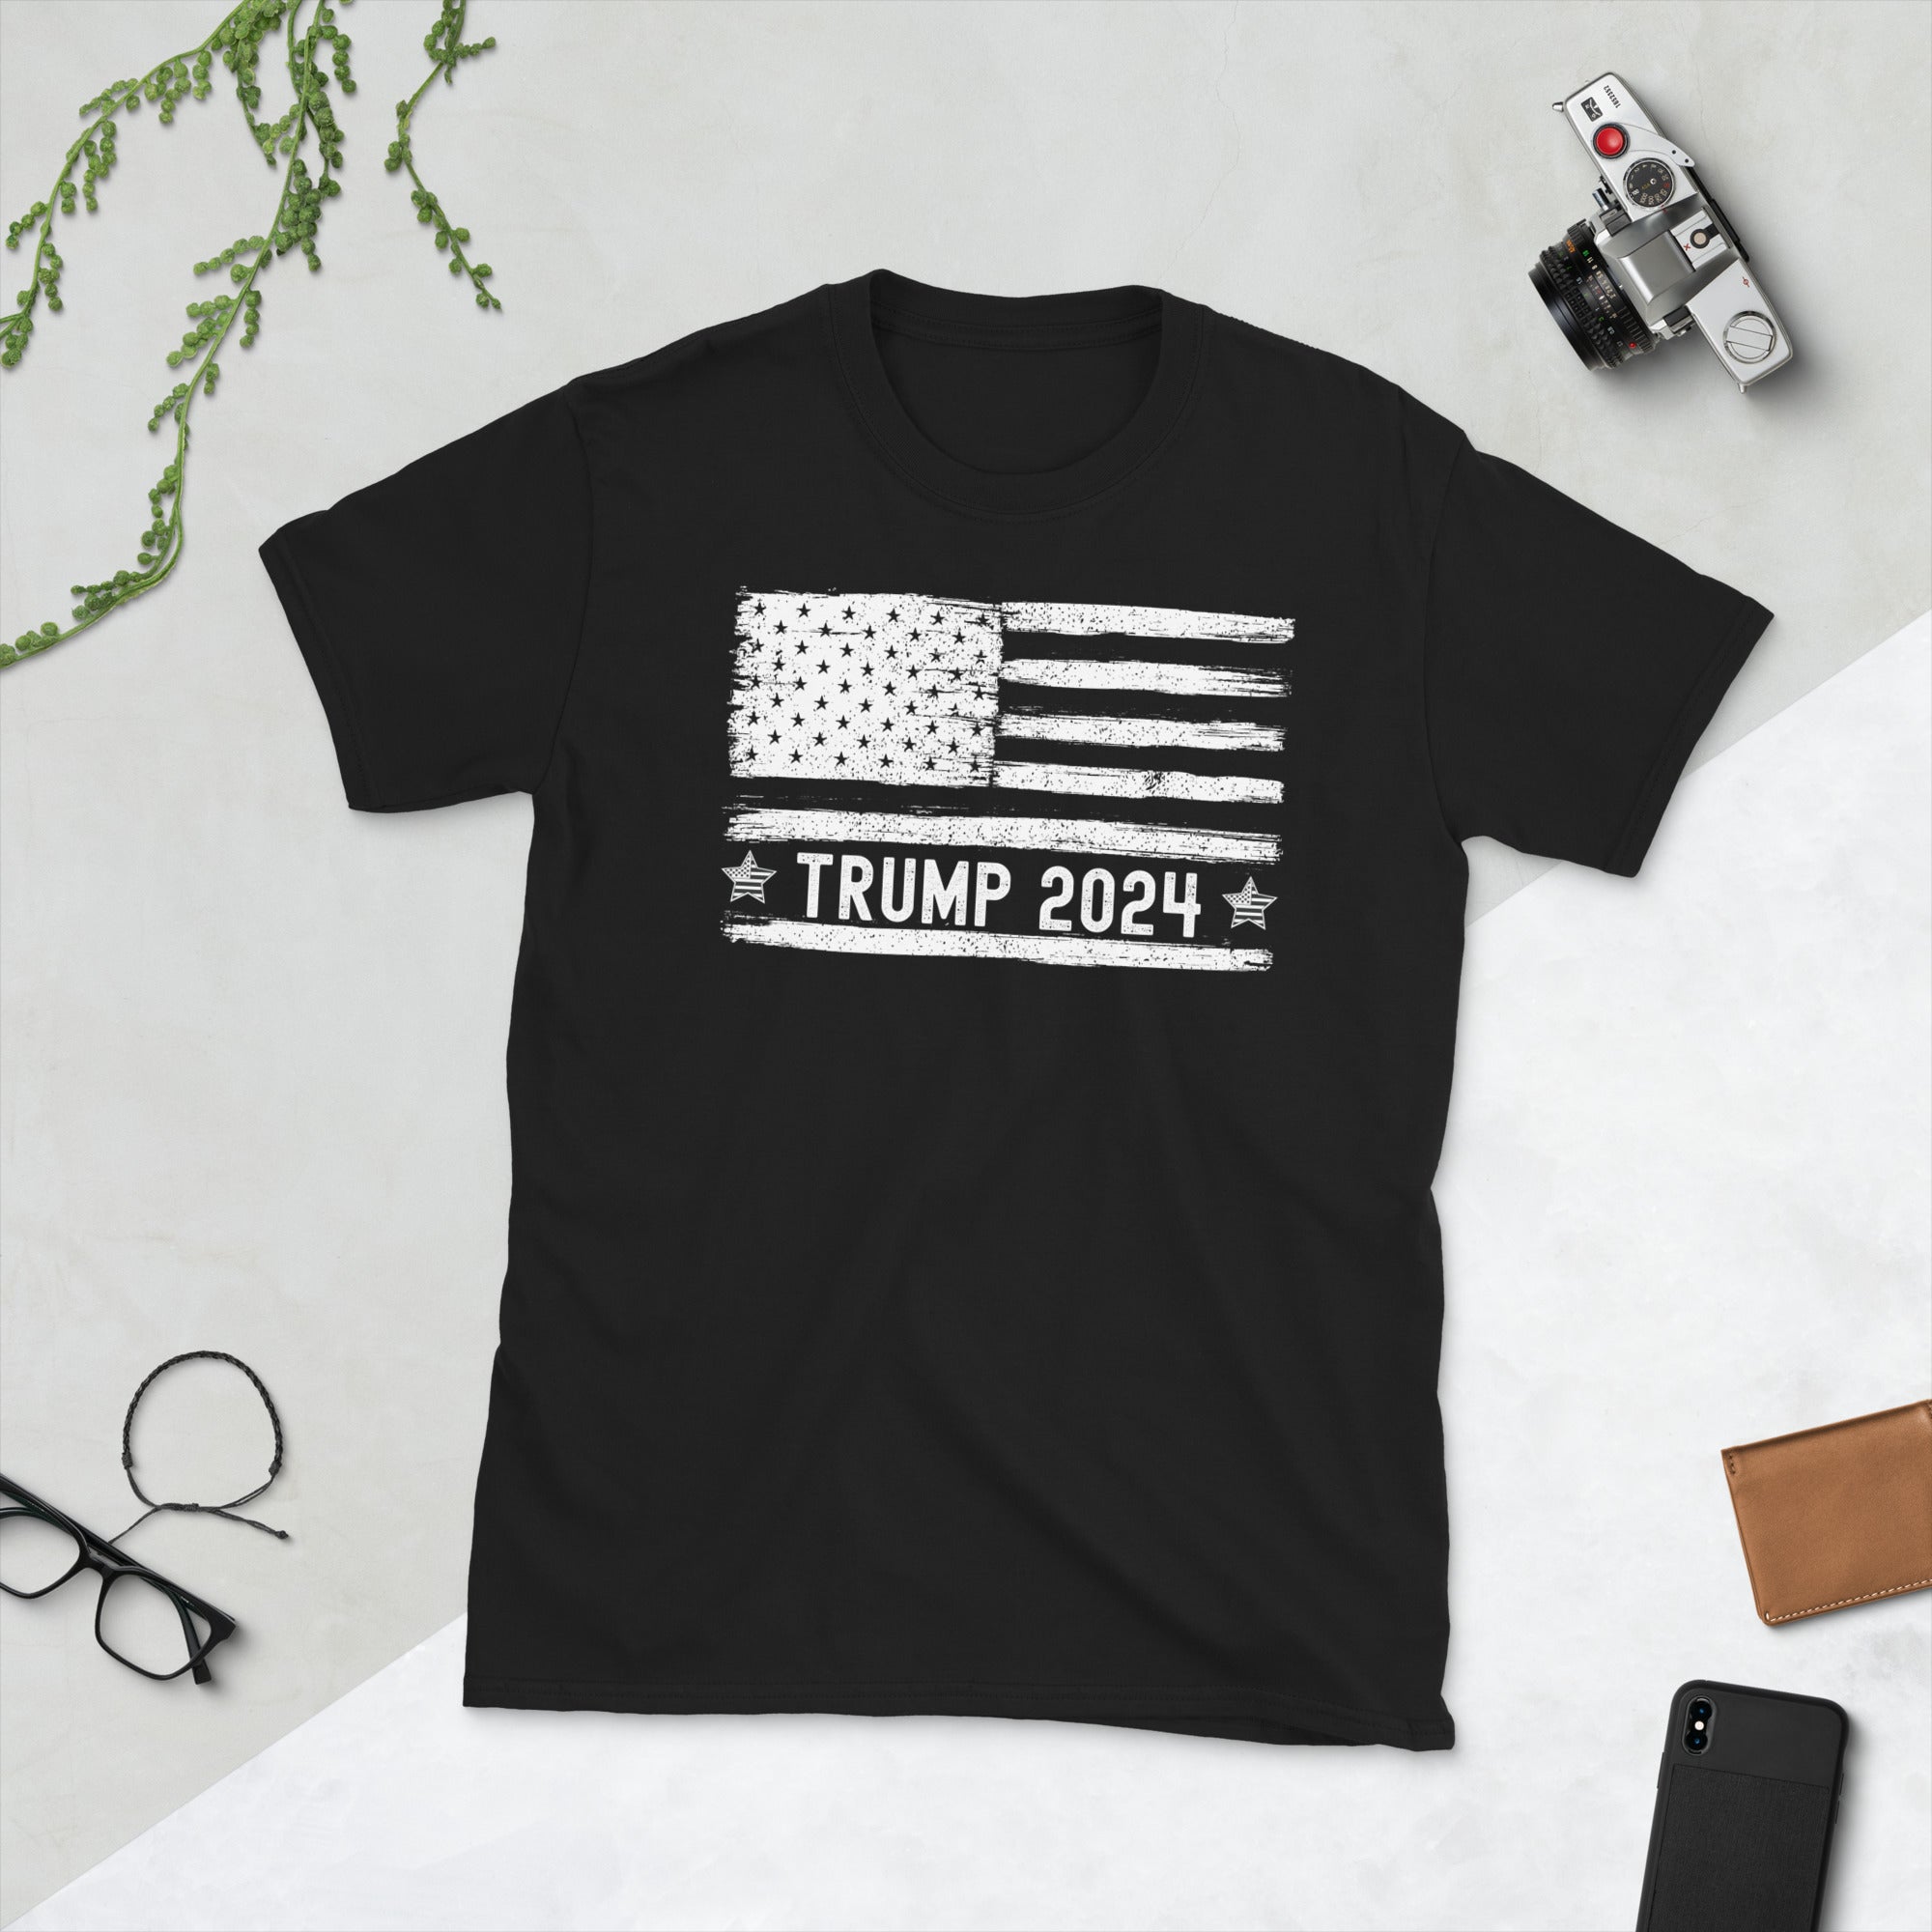 Camisa con la bandera de Trump, camiseta de las elecciones presidenciales de EE. UU. 2024, camisa de Donald Trump, camiseta con la bandera de EE. UU., regalo republicano, camiseta vintage de Trump 2024